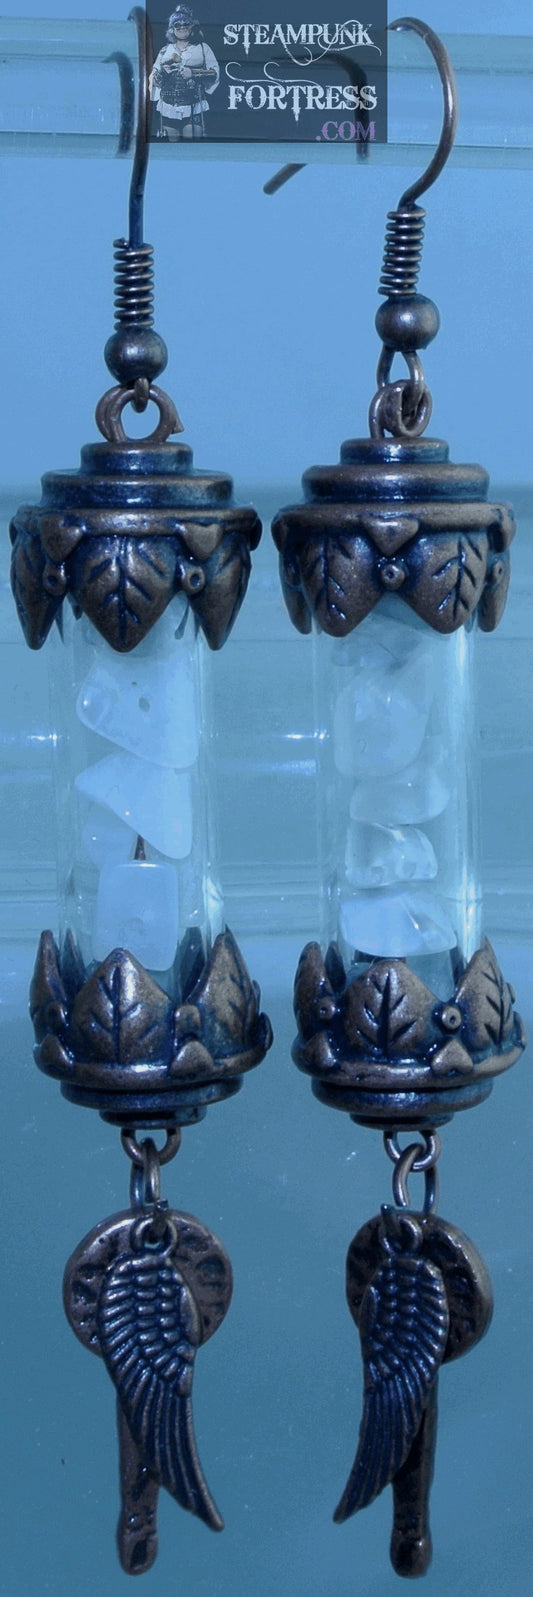 COPPER VIAL SCROLL GLASS MOONSTONE GEMSTONES COPPER WINGS KEYS PIERCED EARRINGS STARR WILDE STEAMPUNK FORTRESS